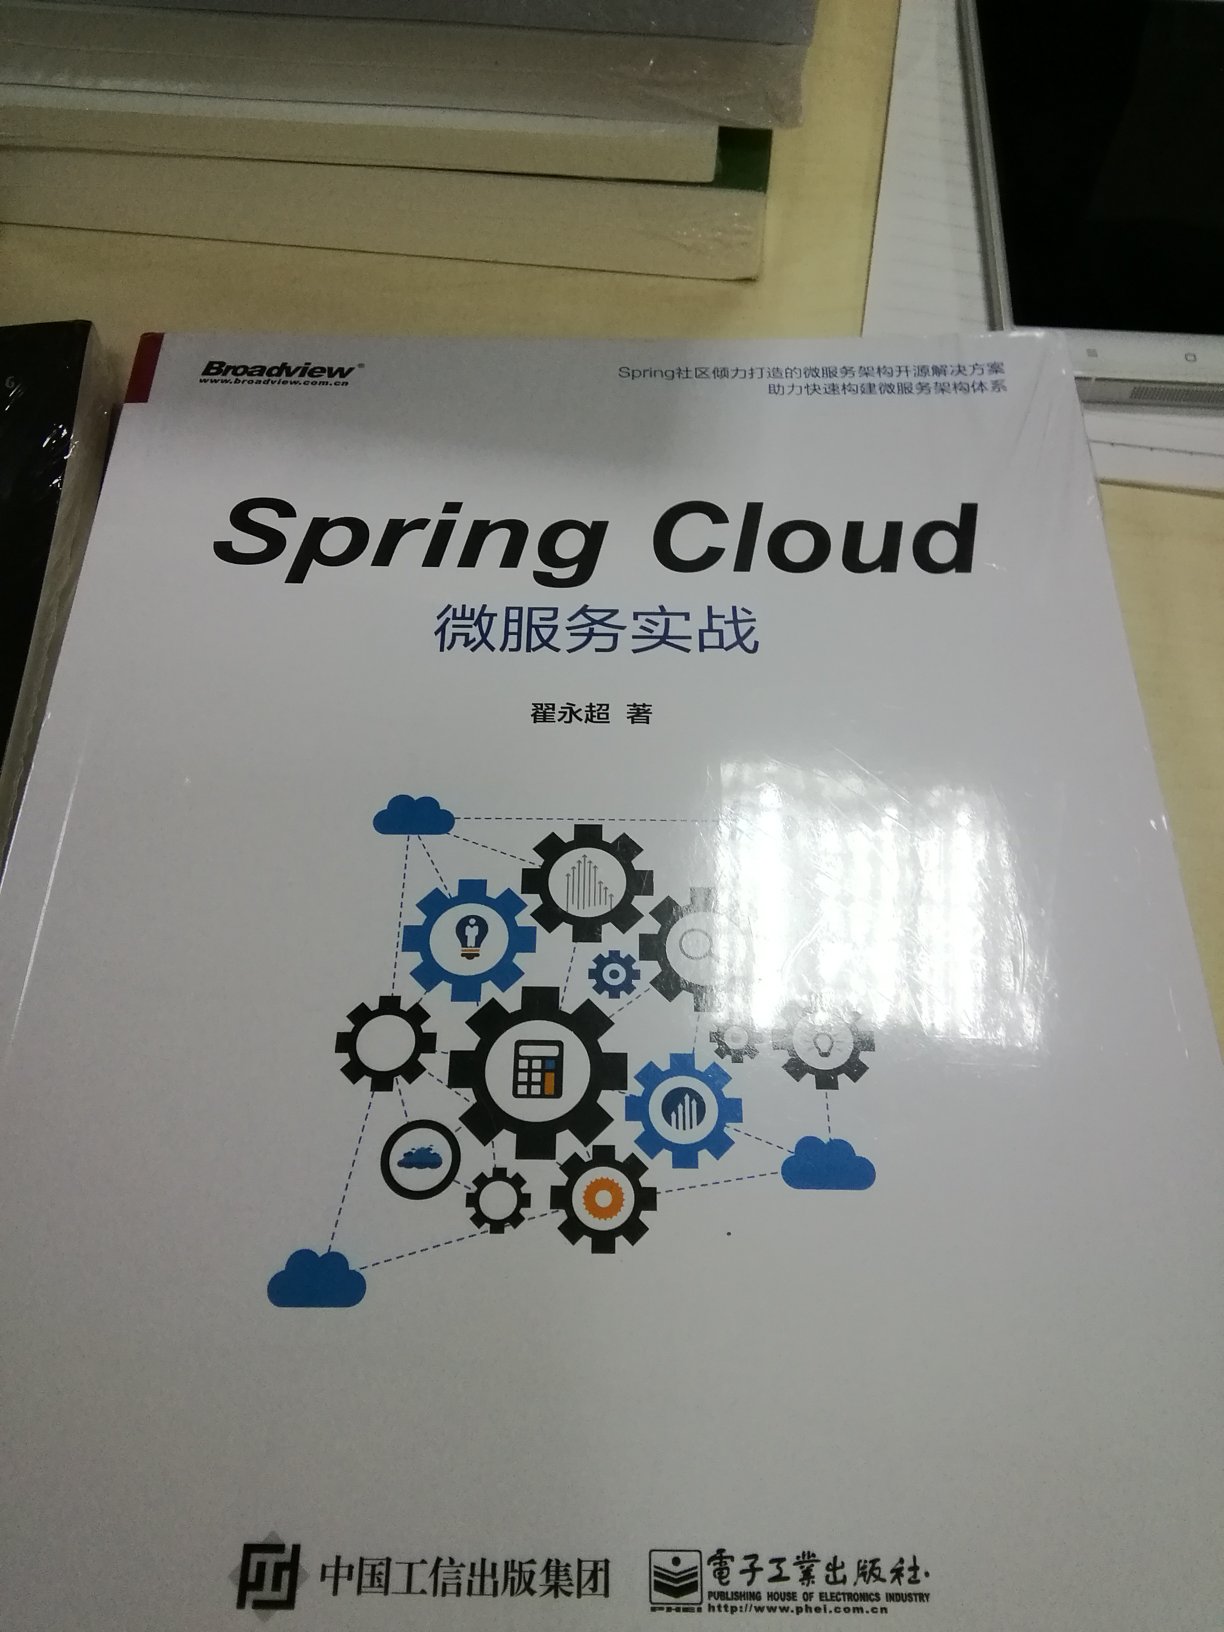 完整的spring cloud架构书，还行吧！